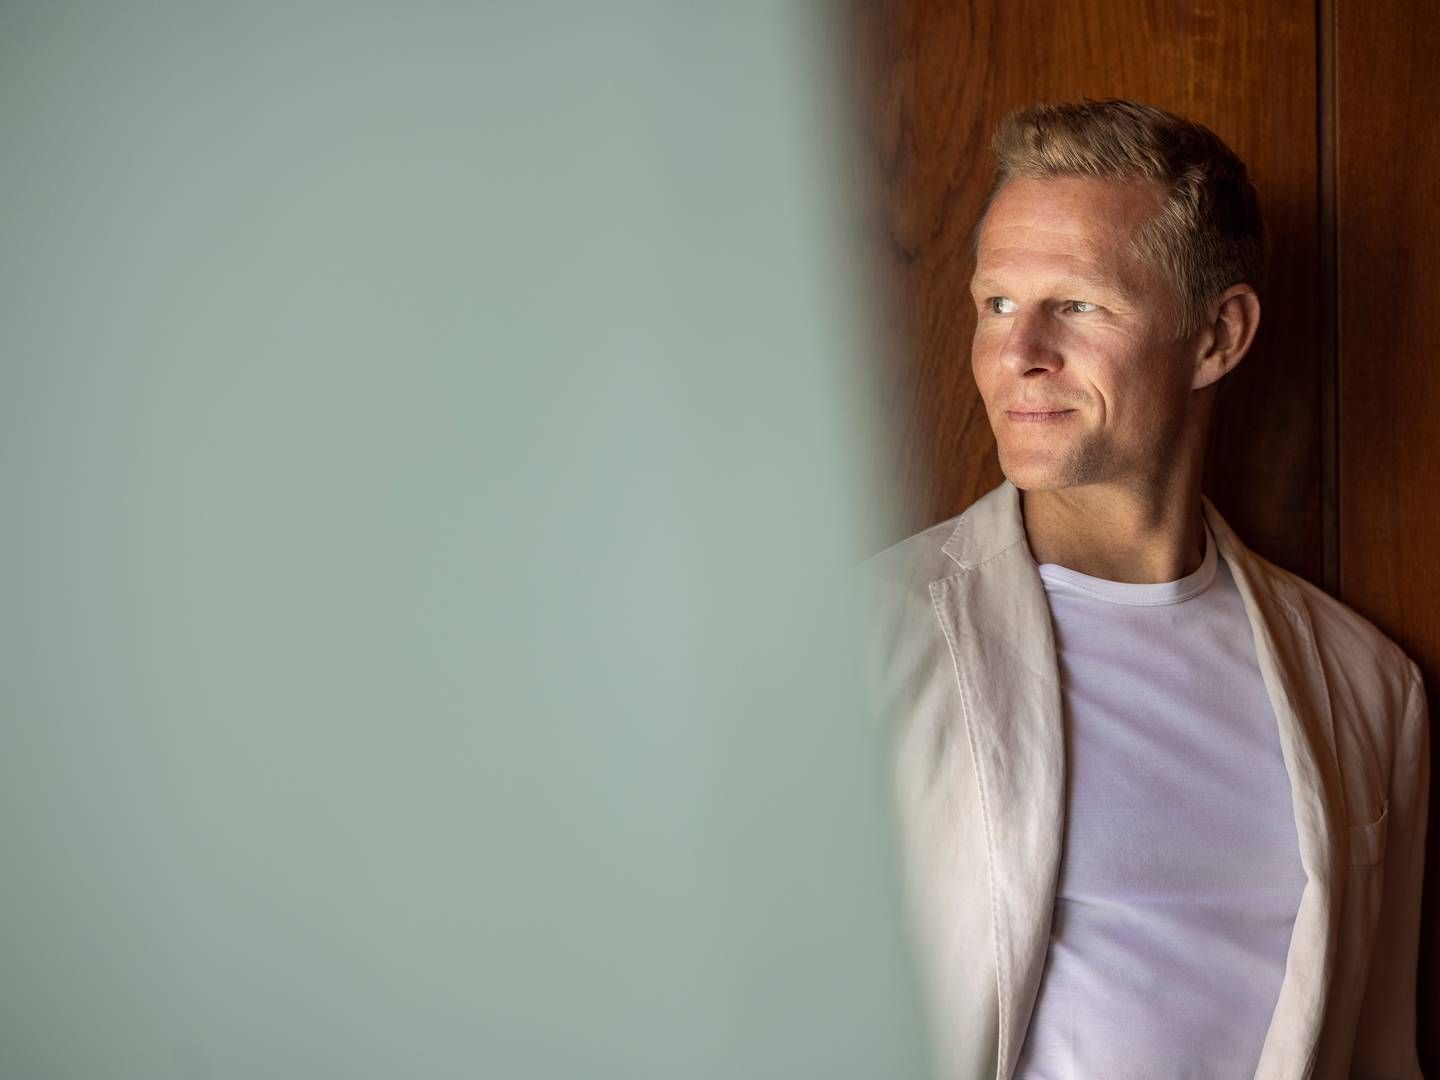 Bjarke Mikkelsen er efter 17 år i udlandet vendt hjem til Danmark for at tage hul på en ny erhvervsudfordring. | Photo: PR